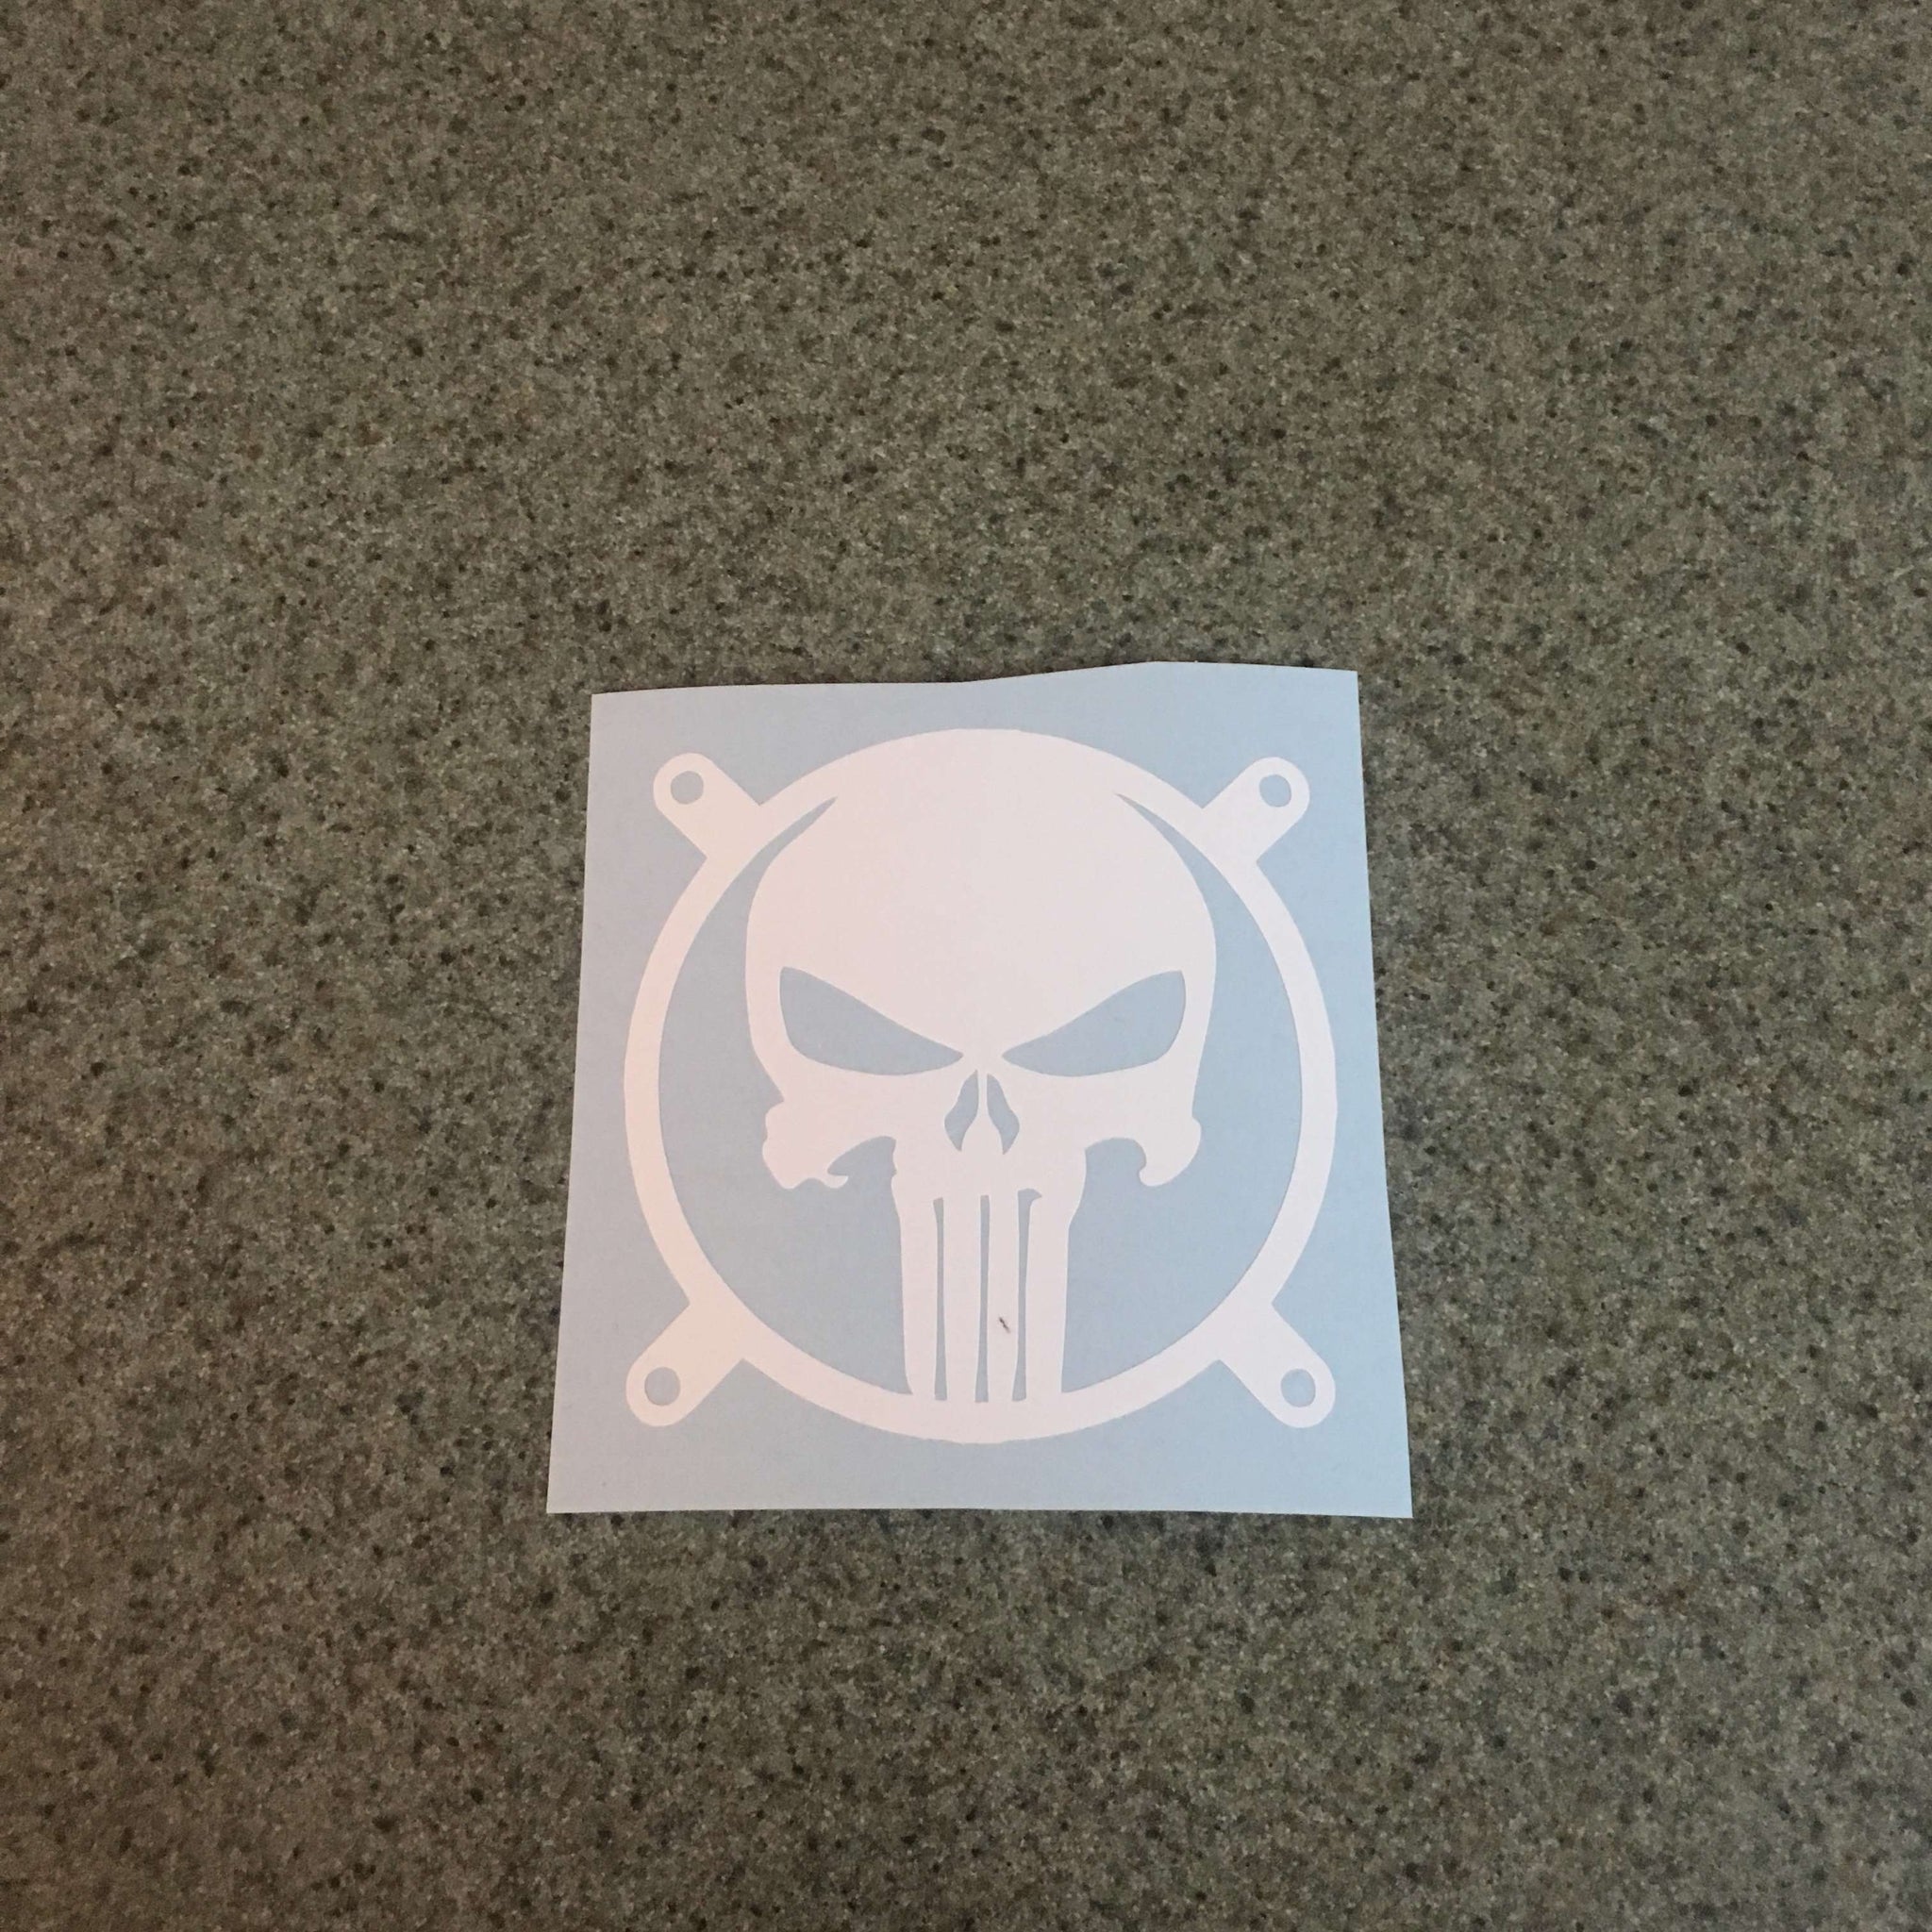 Sticker The Punisher